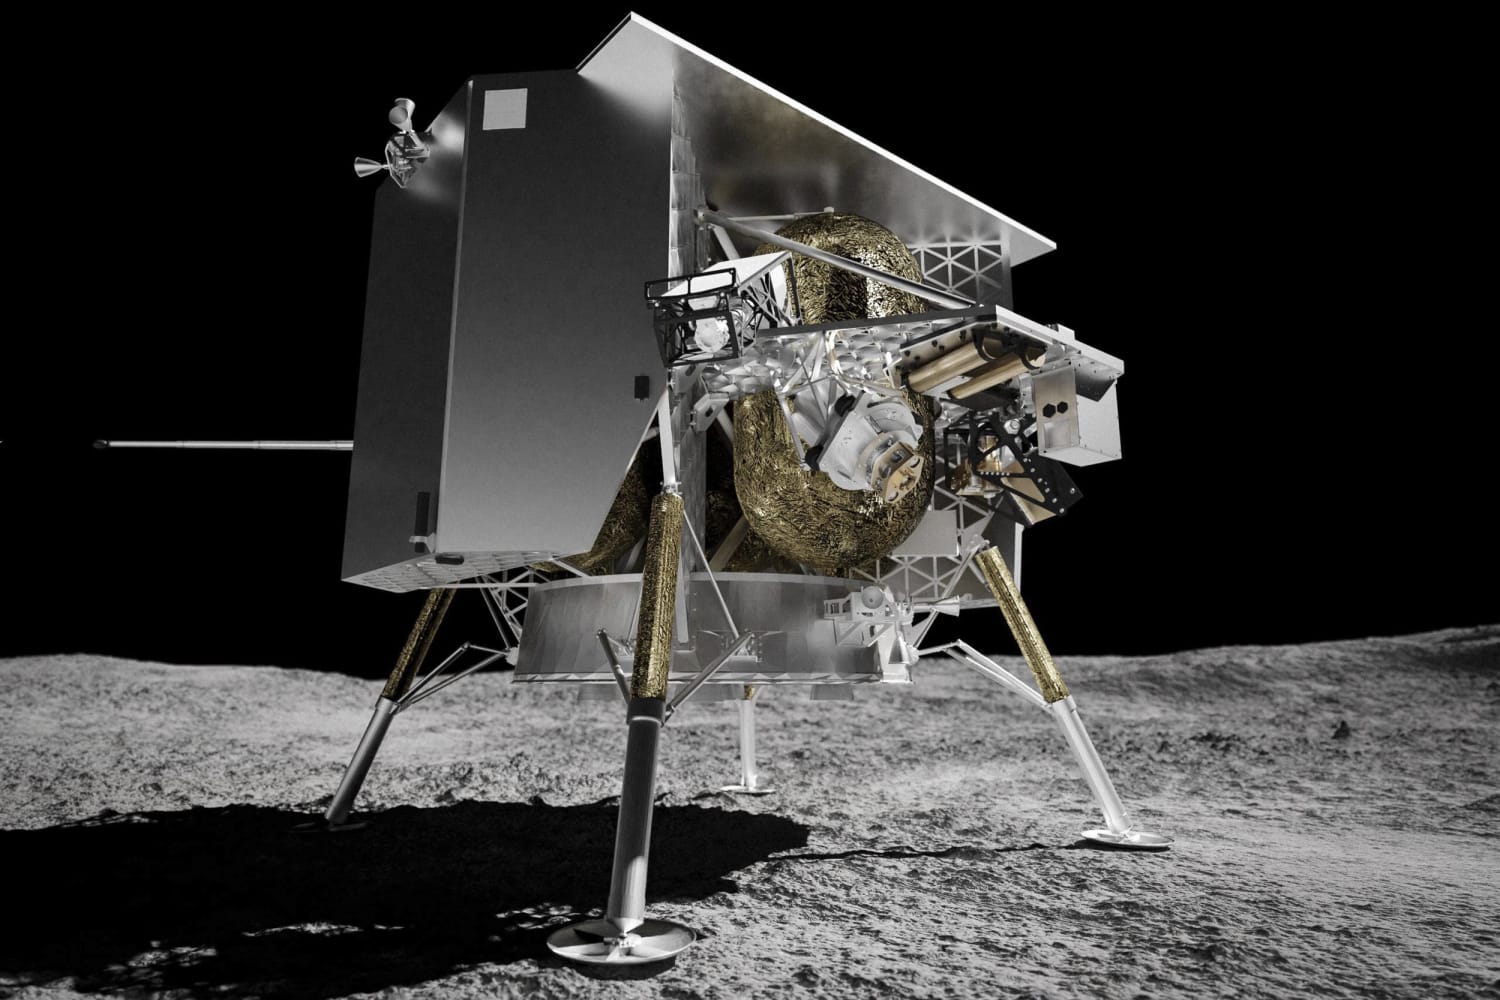 Está previsto el lanzamiento de la primera misión comercial a la Luna, incluidos entierros espaciales